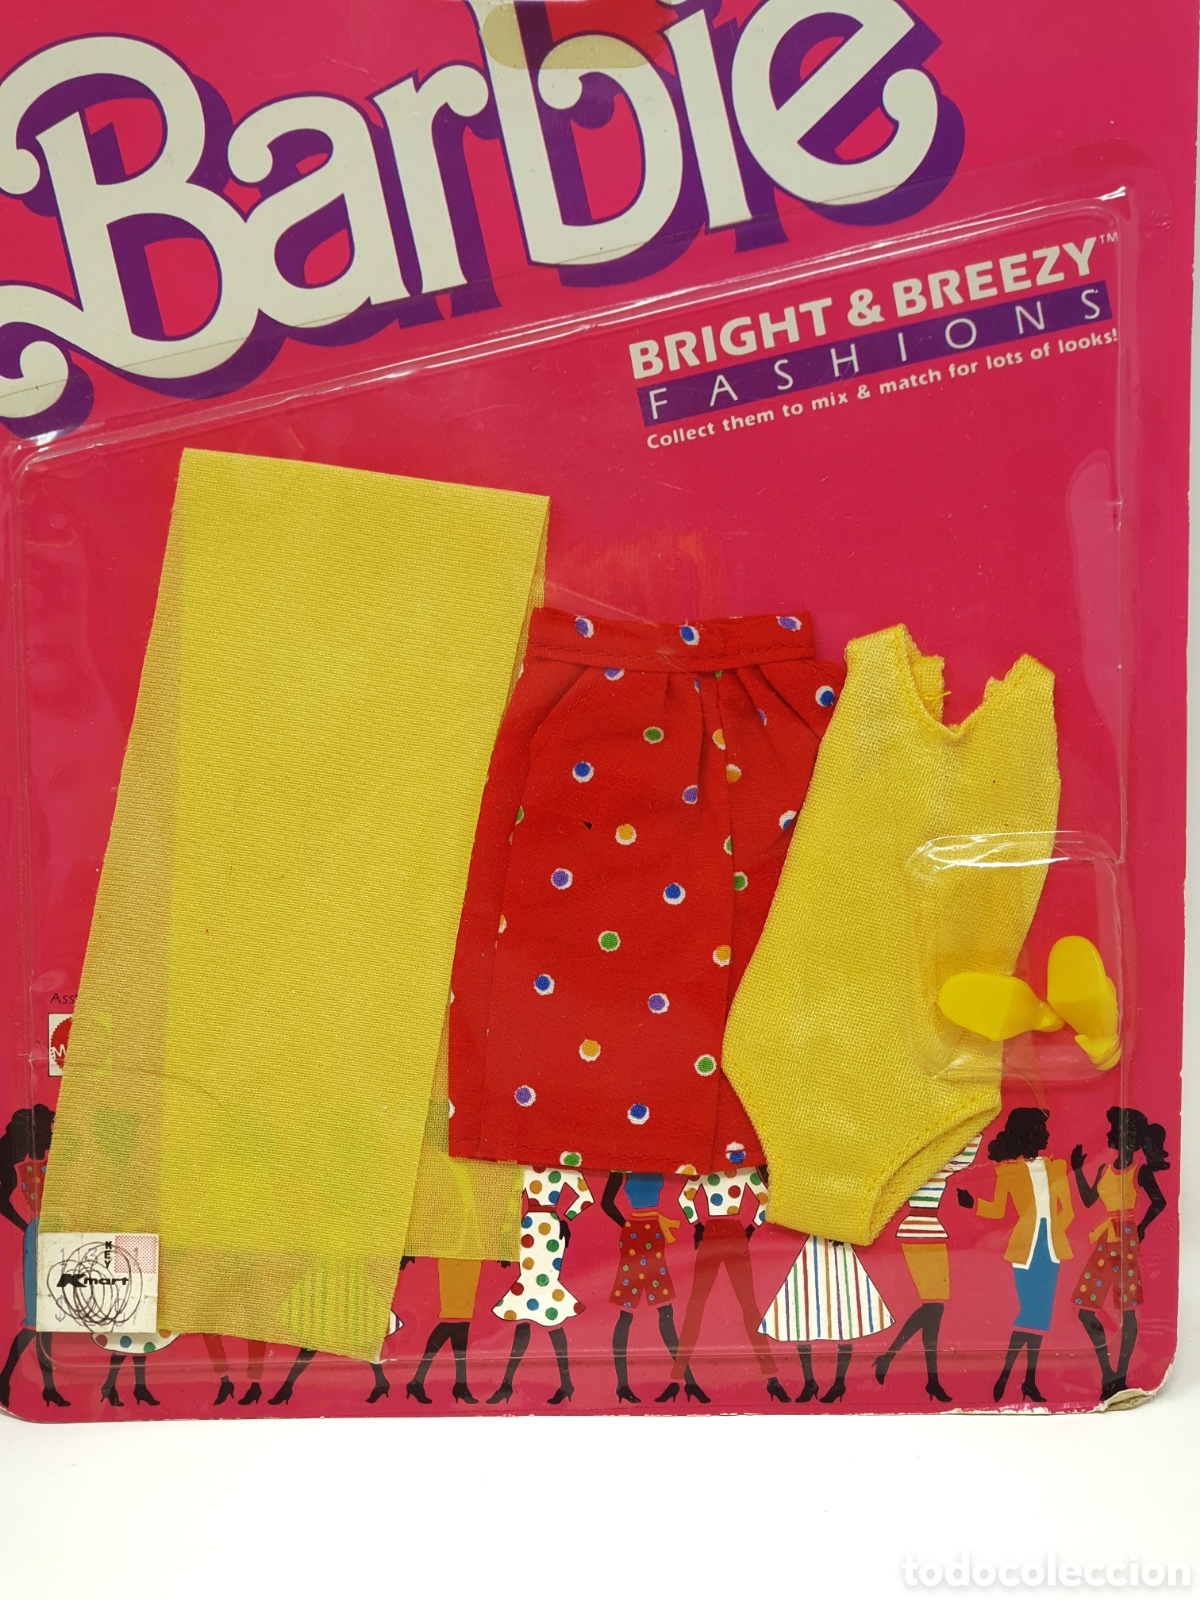 Barbie Bright & Breezy 1987' Fashion NRFB !